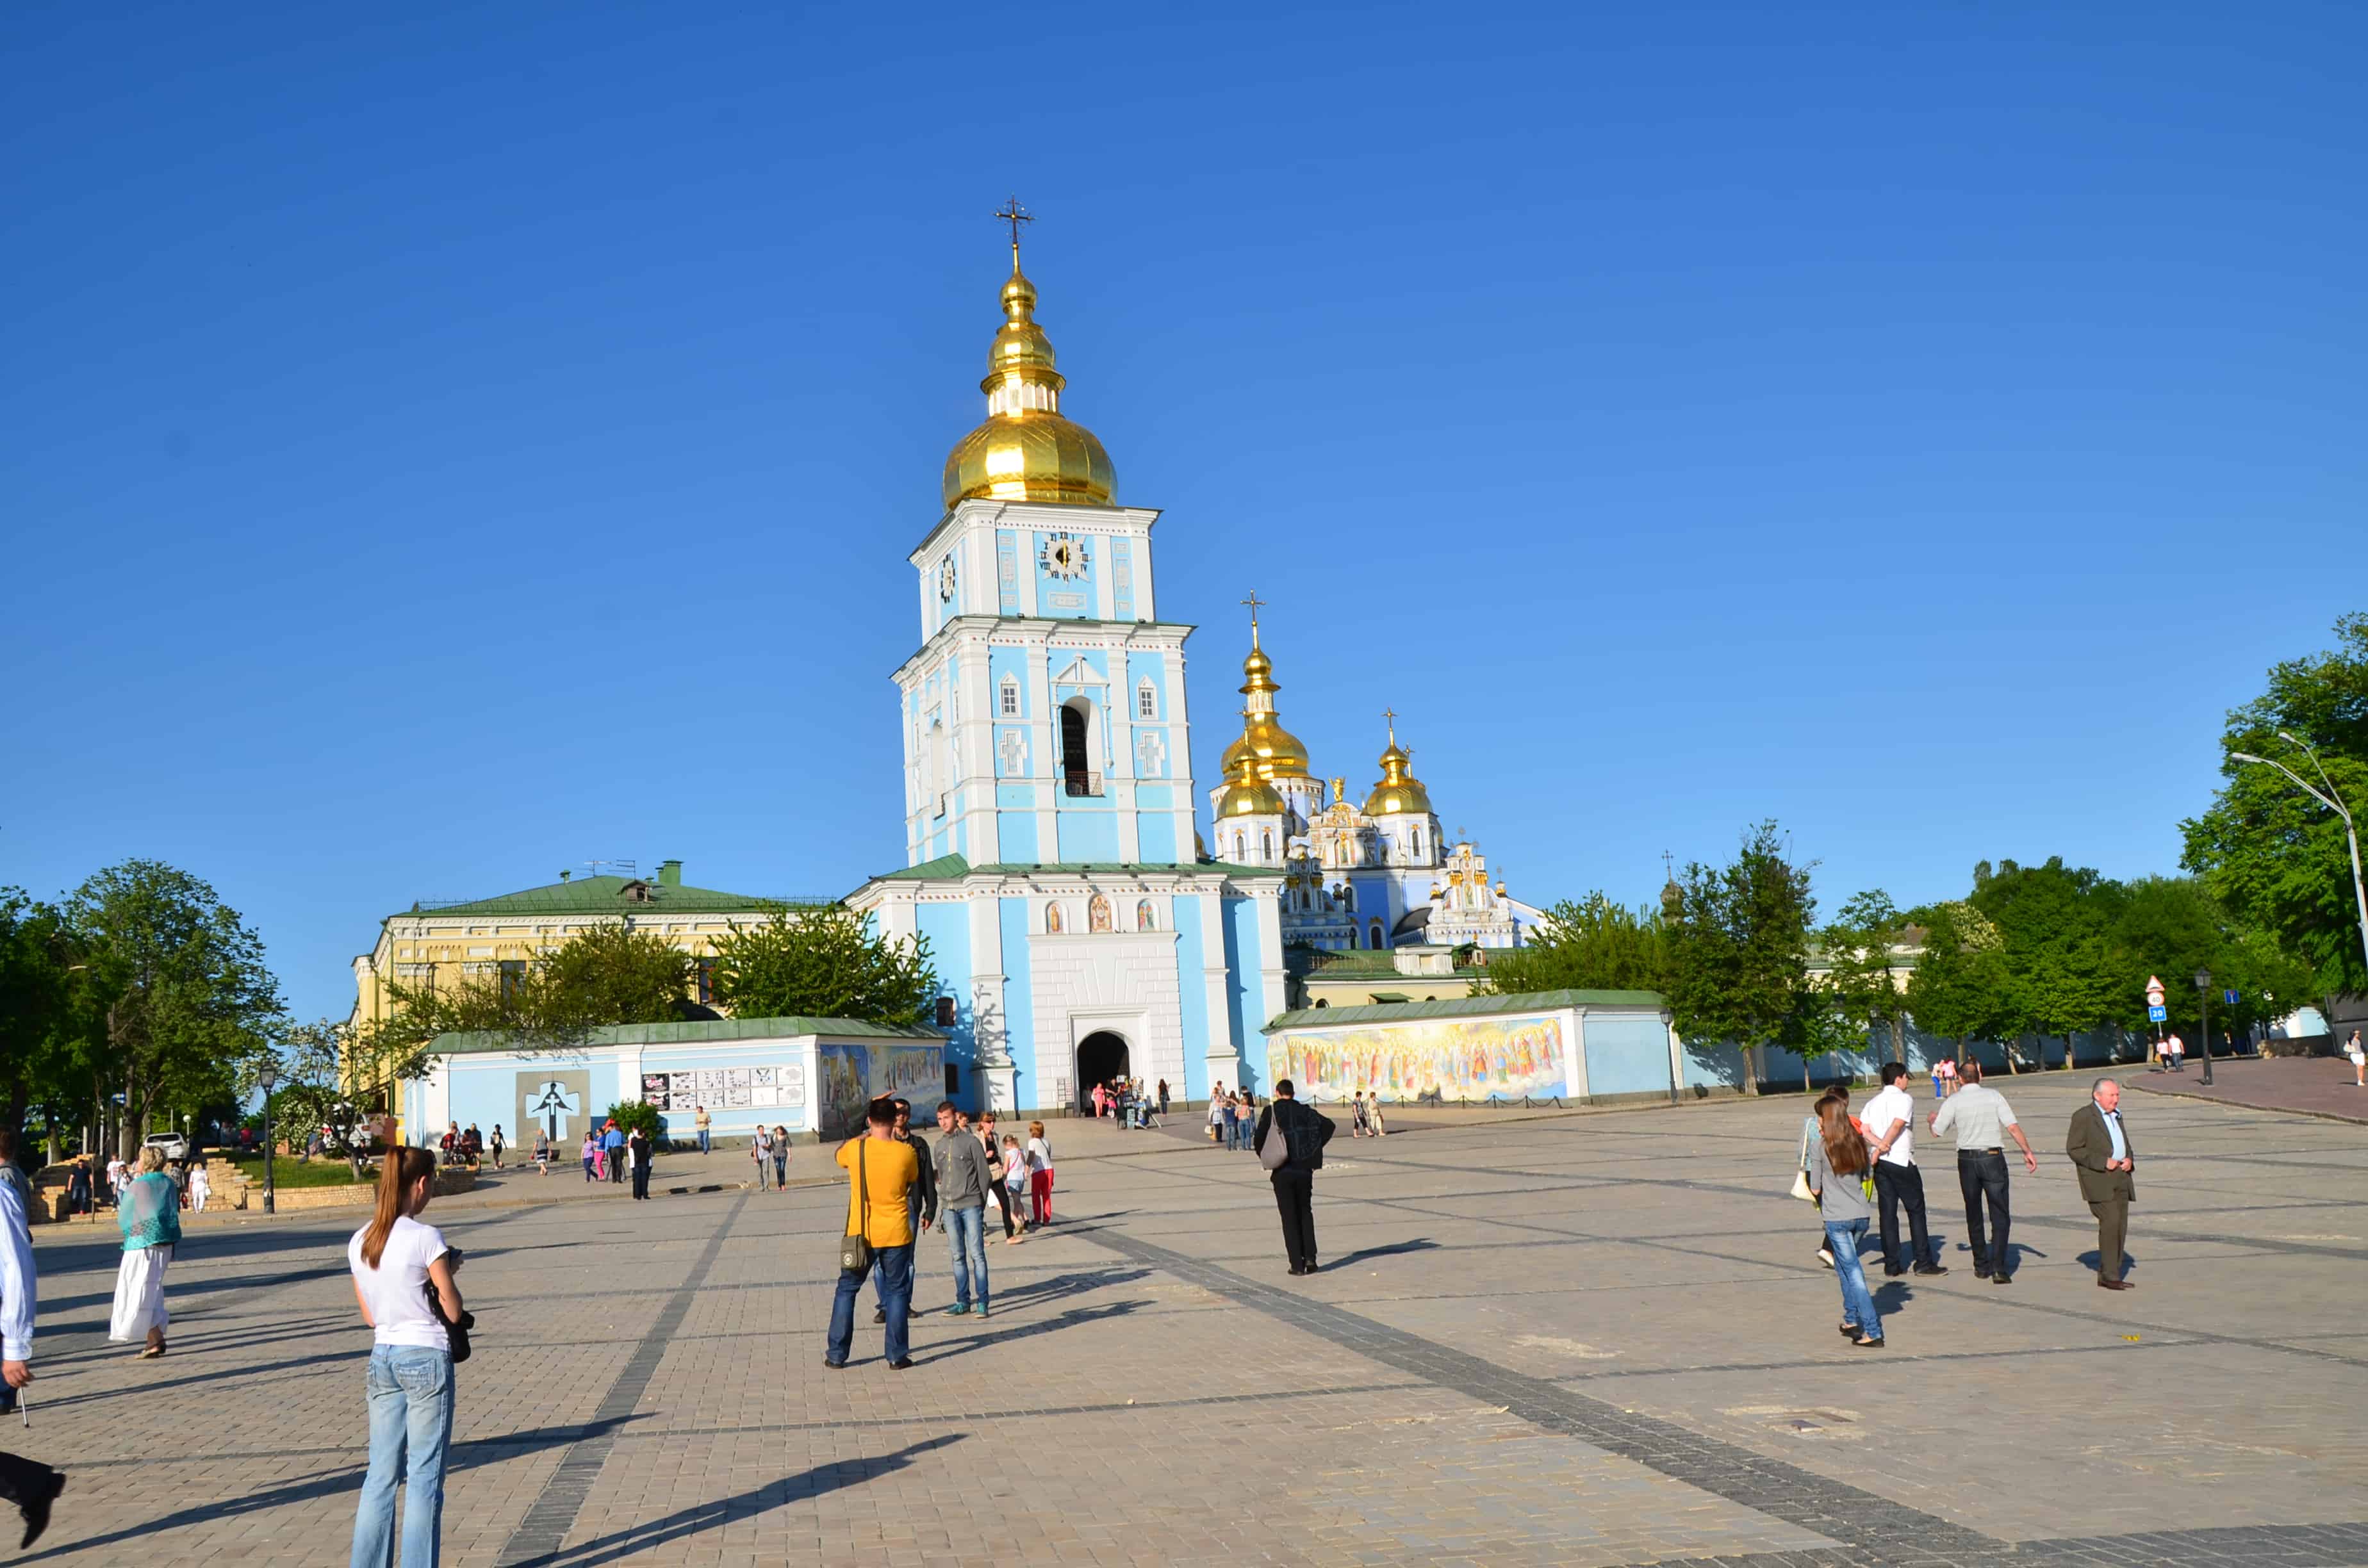 St. Michael's Golden-Domed Monastery in Kyiv, Ukraine